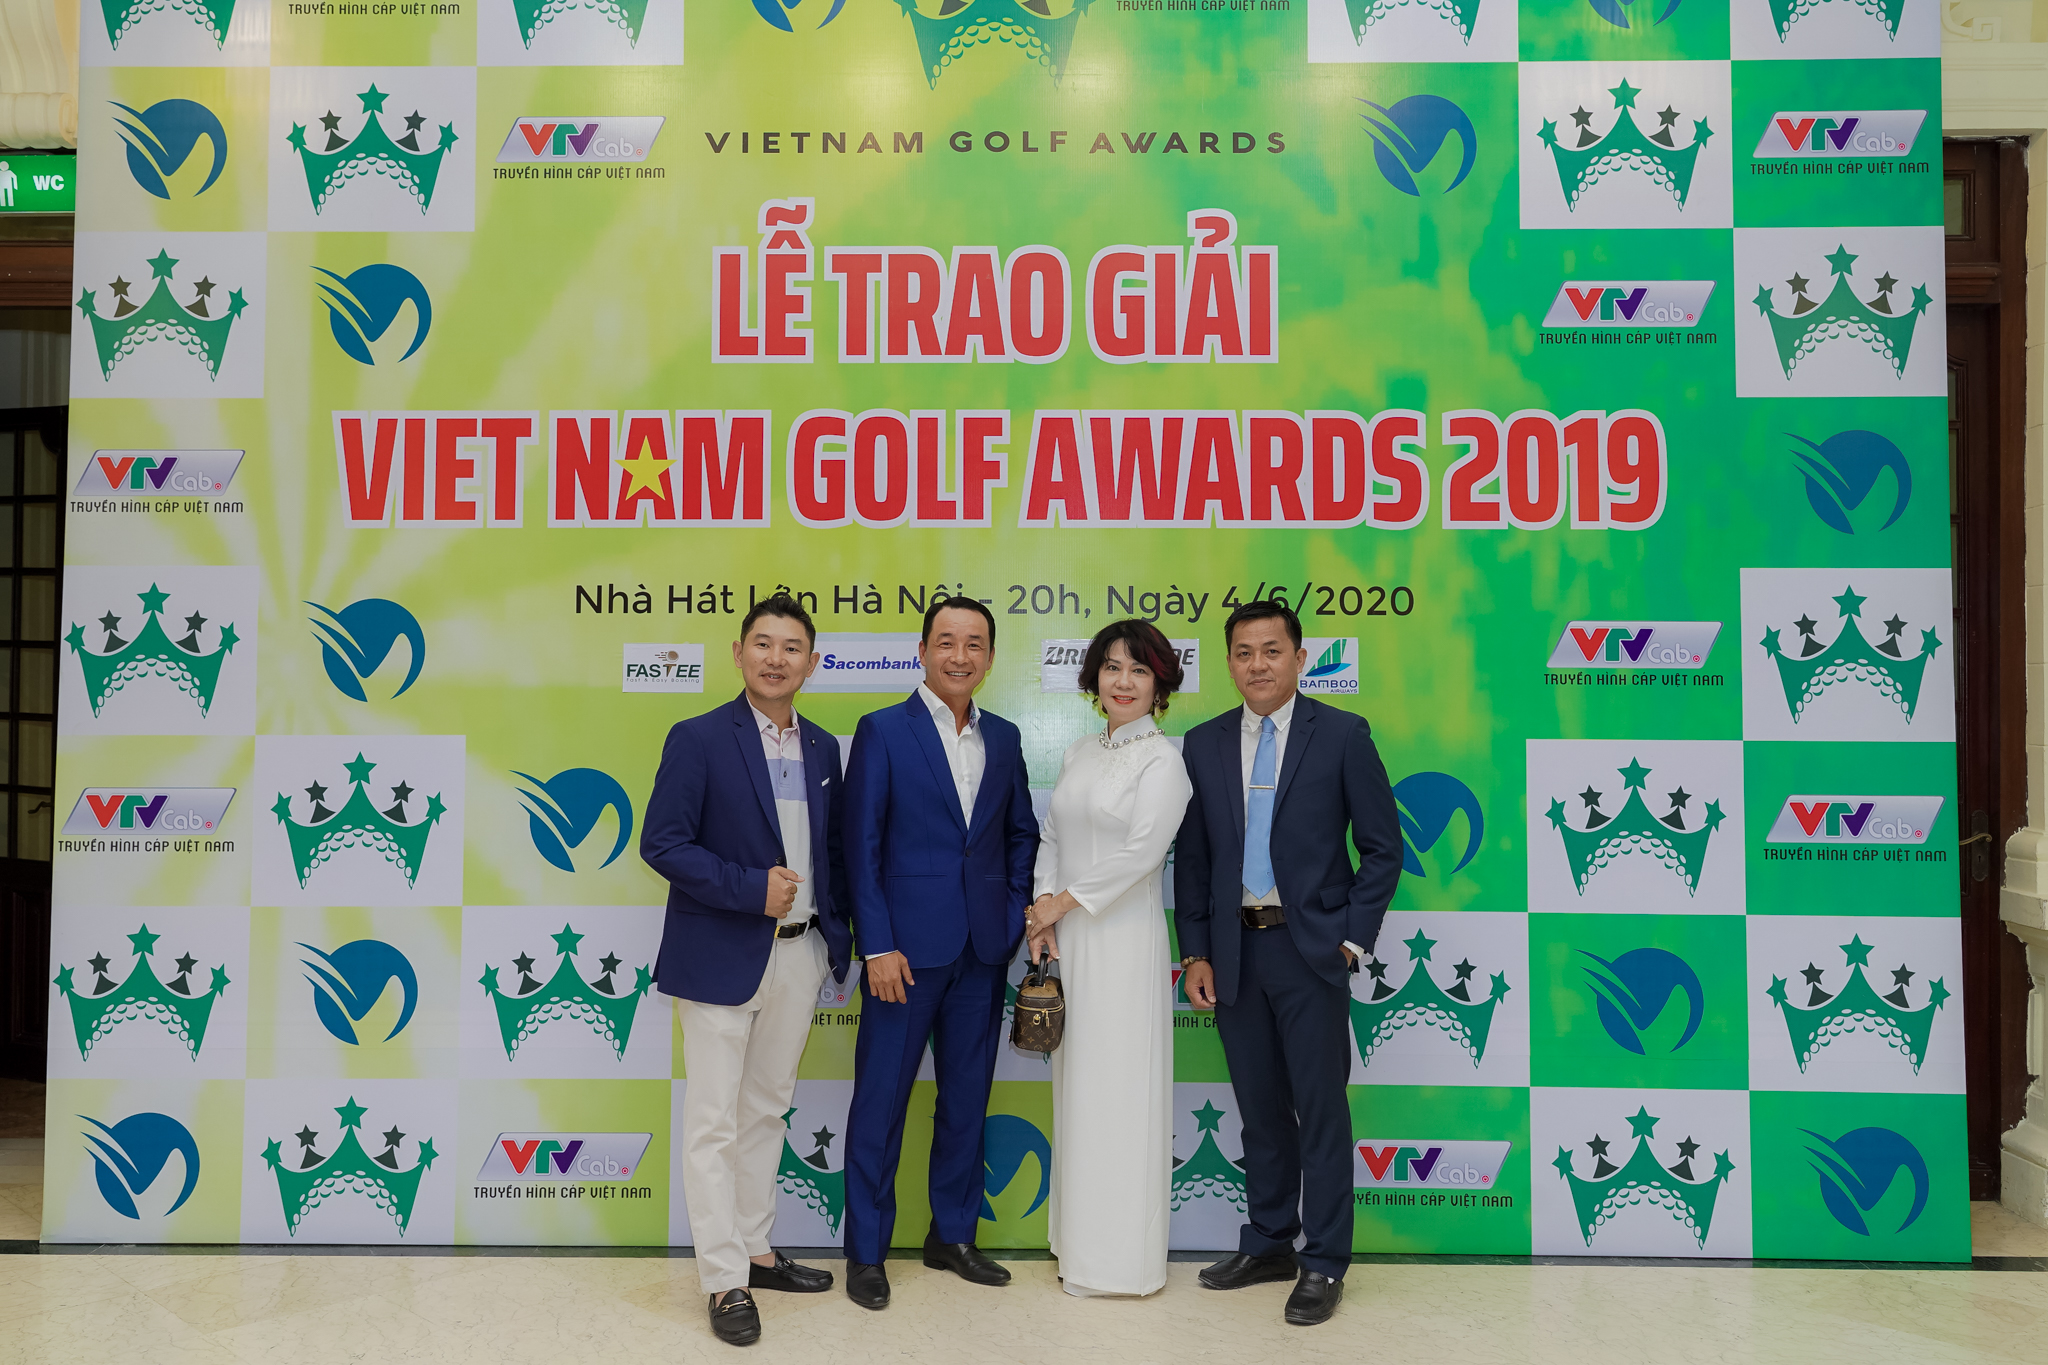 SÂN GOLF LONG BIÊN VÀ SÂN GOLF TÂN SƠN NHẤT ĐƯỢC VINH DANH TẠI LỄ TRAO GIẢI VIỆT NAM GOLF AWARDS 2019